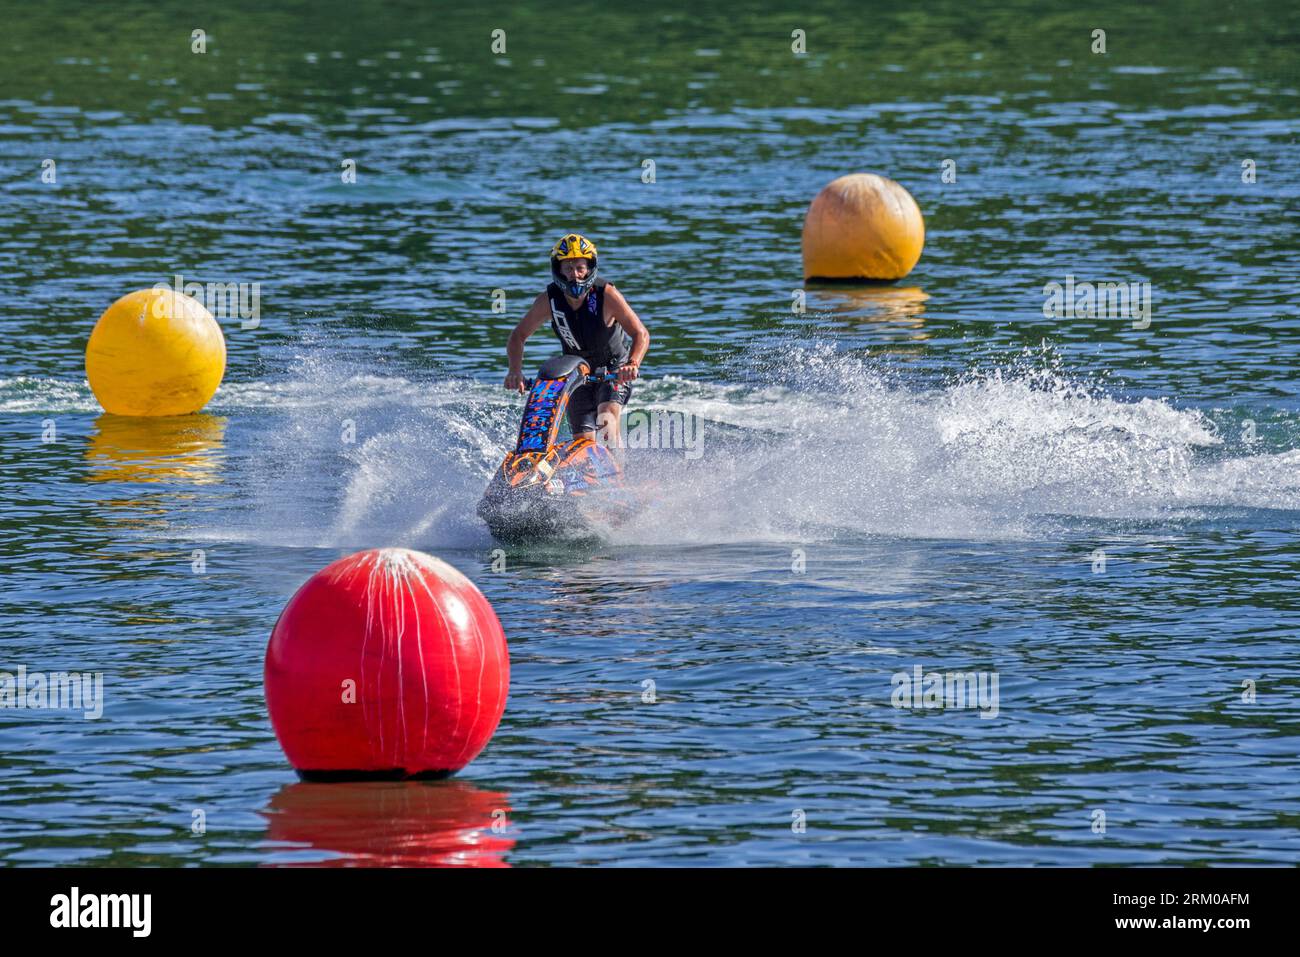 Jet ski / jetski / water scooter / stand-up personal watercraft / PWC rider slaloming along buoys on lake Stock Photo